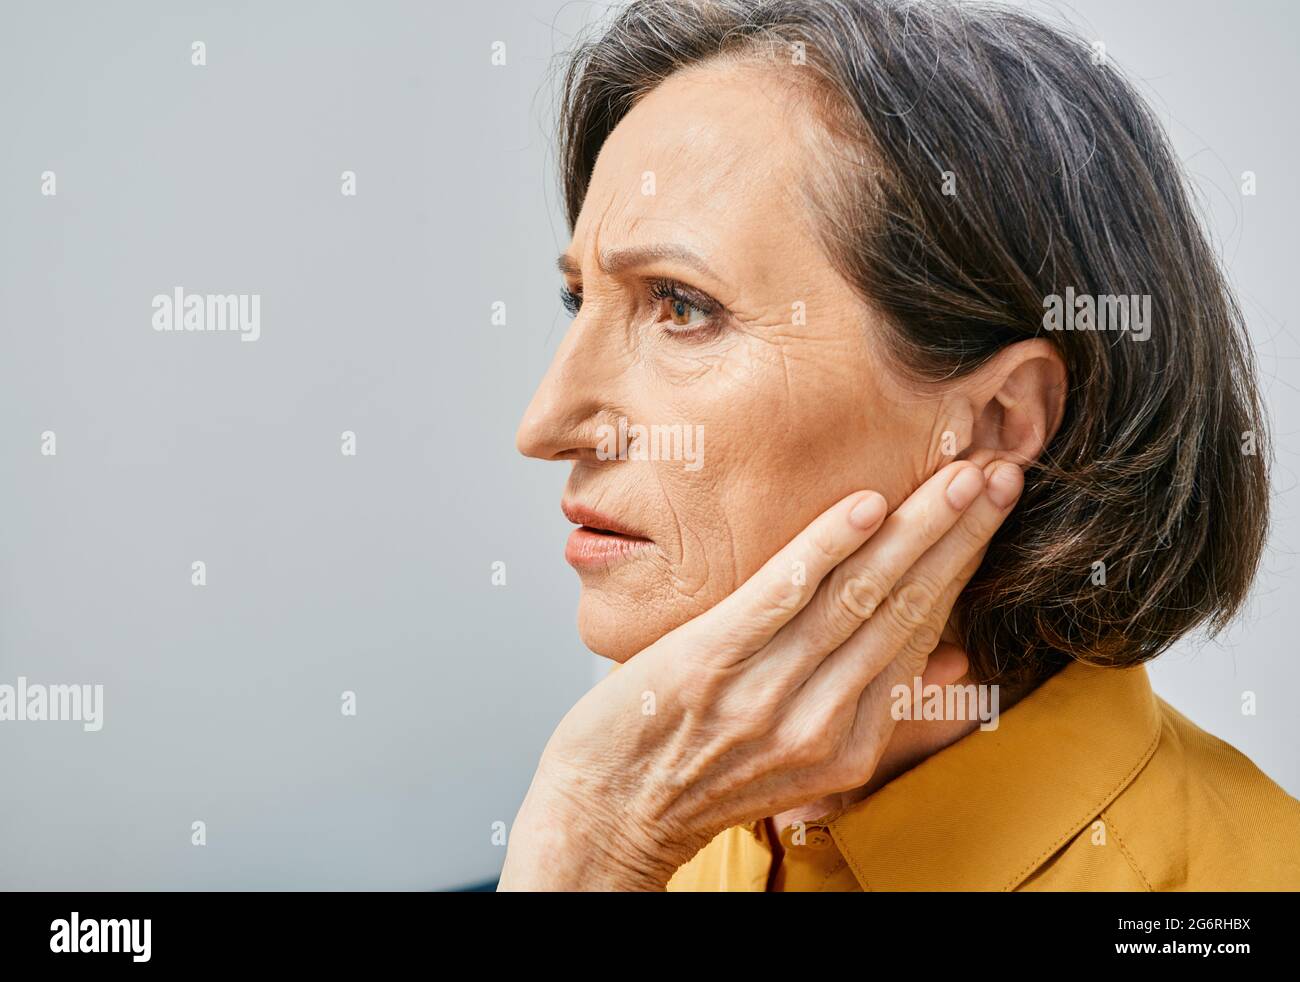 Hörverlust. Reife Frau mit Hörproblemen, die das Ohr mit der Hand berührt. Seitenansicht, Ohrenschmerzen Stockfoto